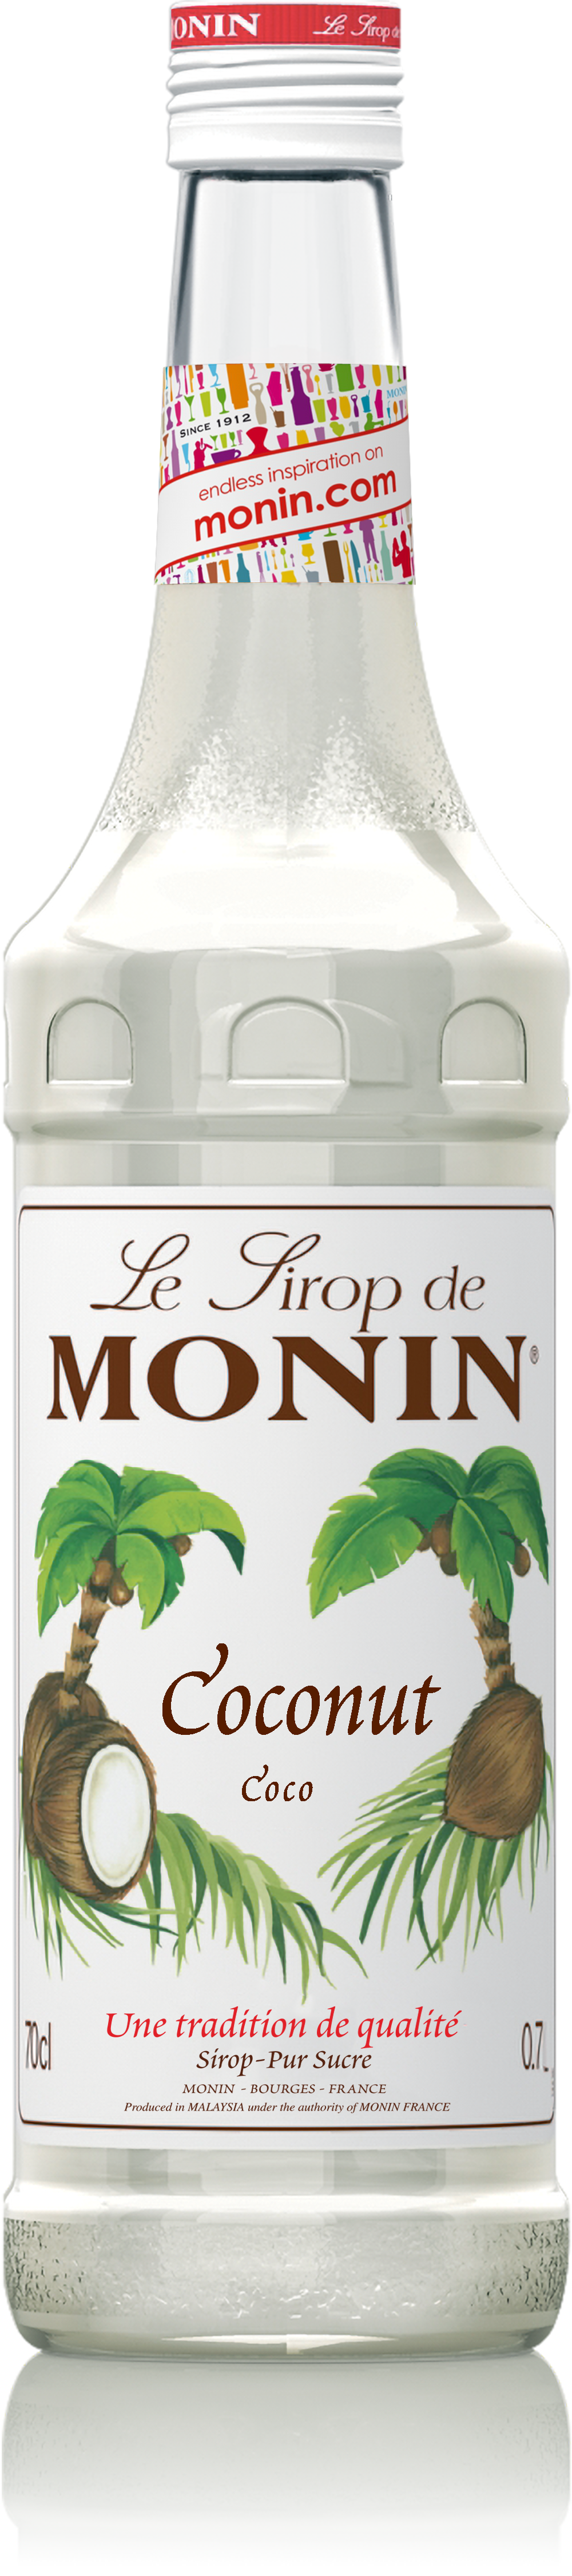 Le Sirop de MONIN Coconut